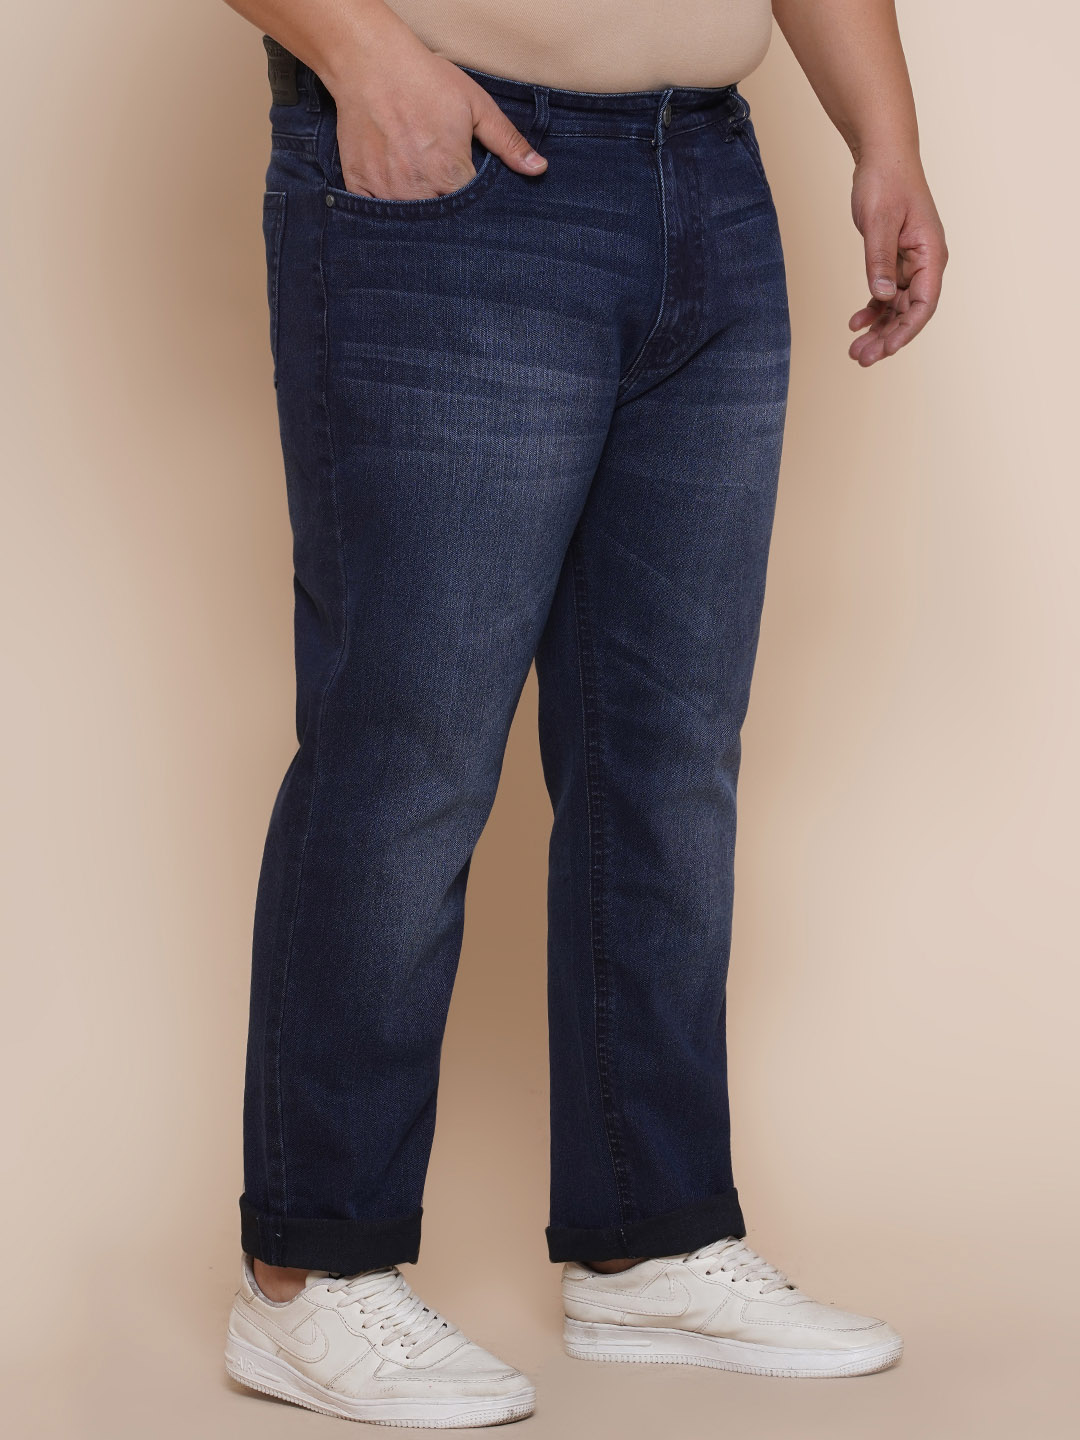 bottomwear/jeans/JPJ12284/jpj12284-4.jpg